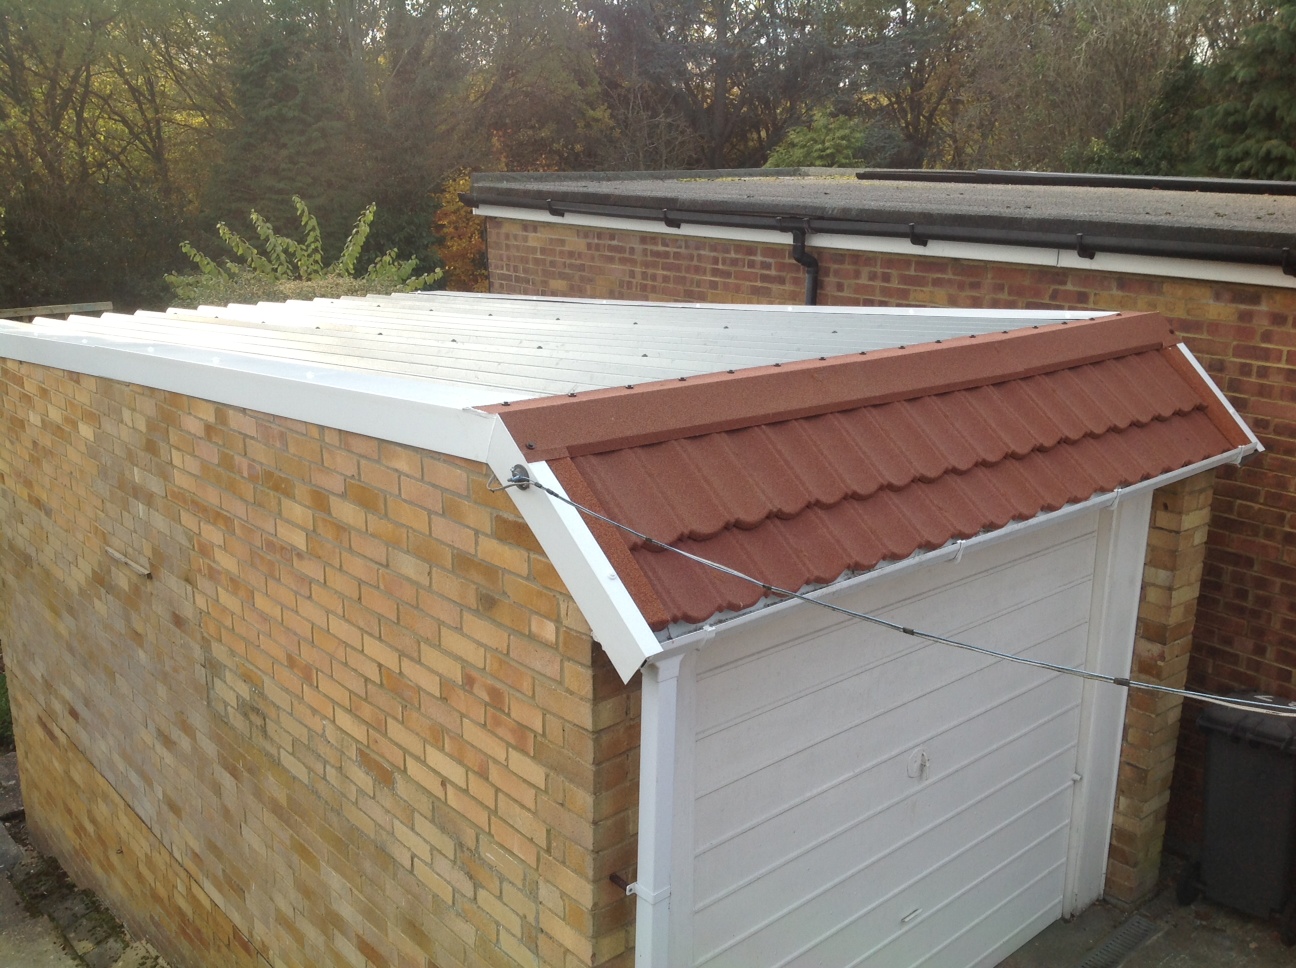 Cobertura Para Garagem Com estrutura em madeira envernizada e telha branca